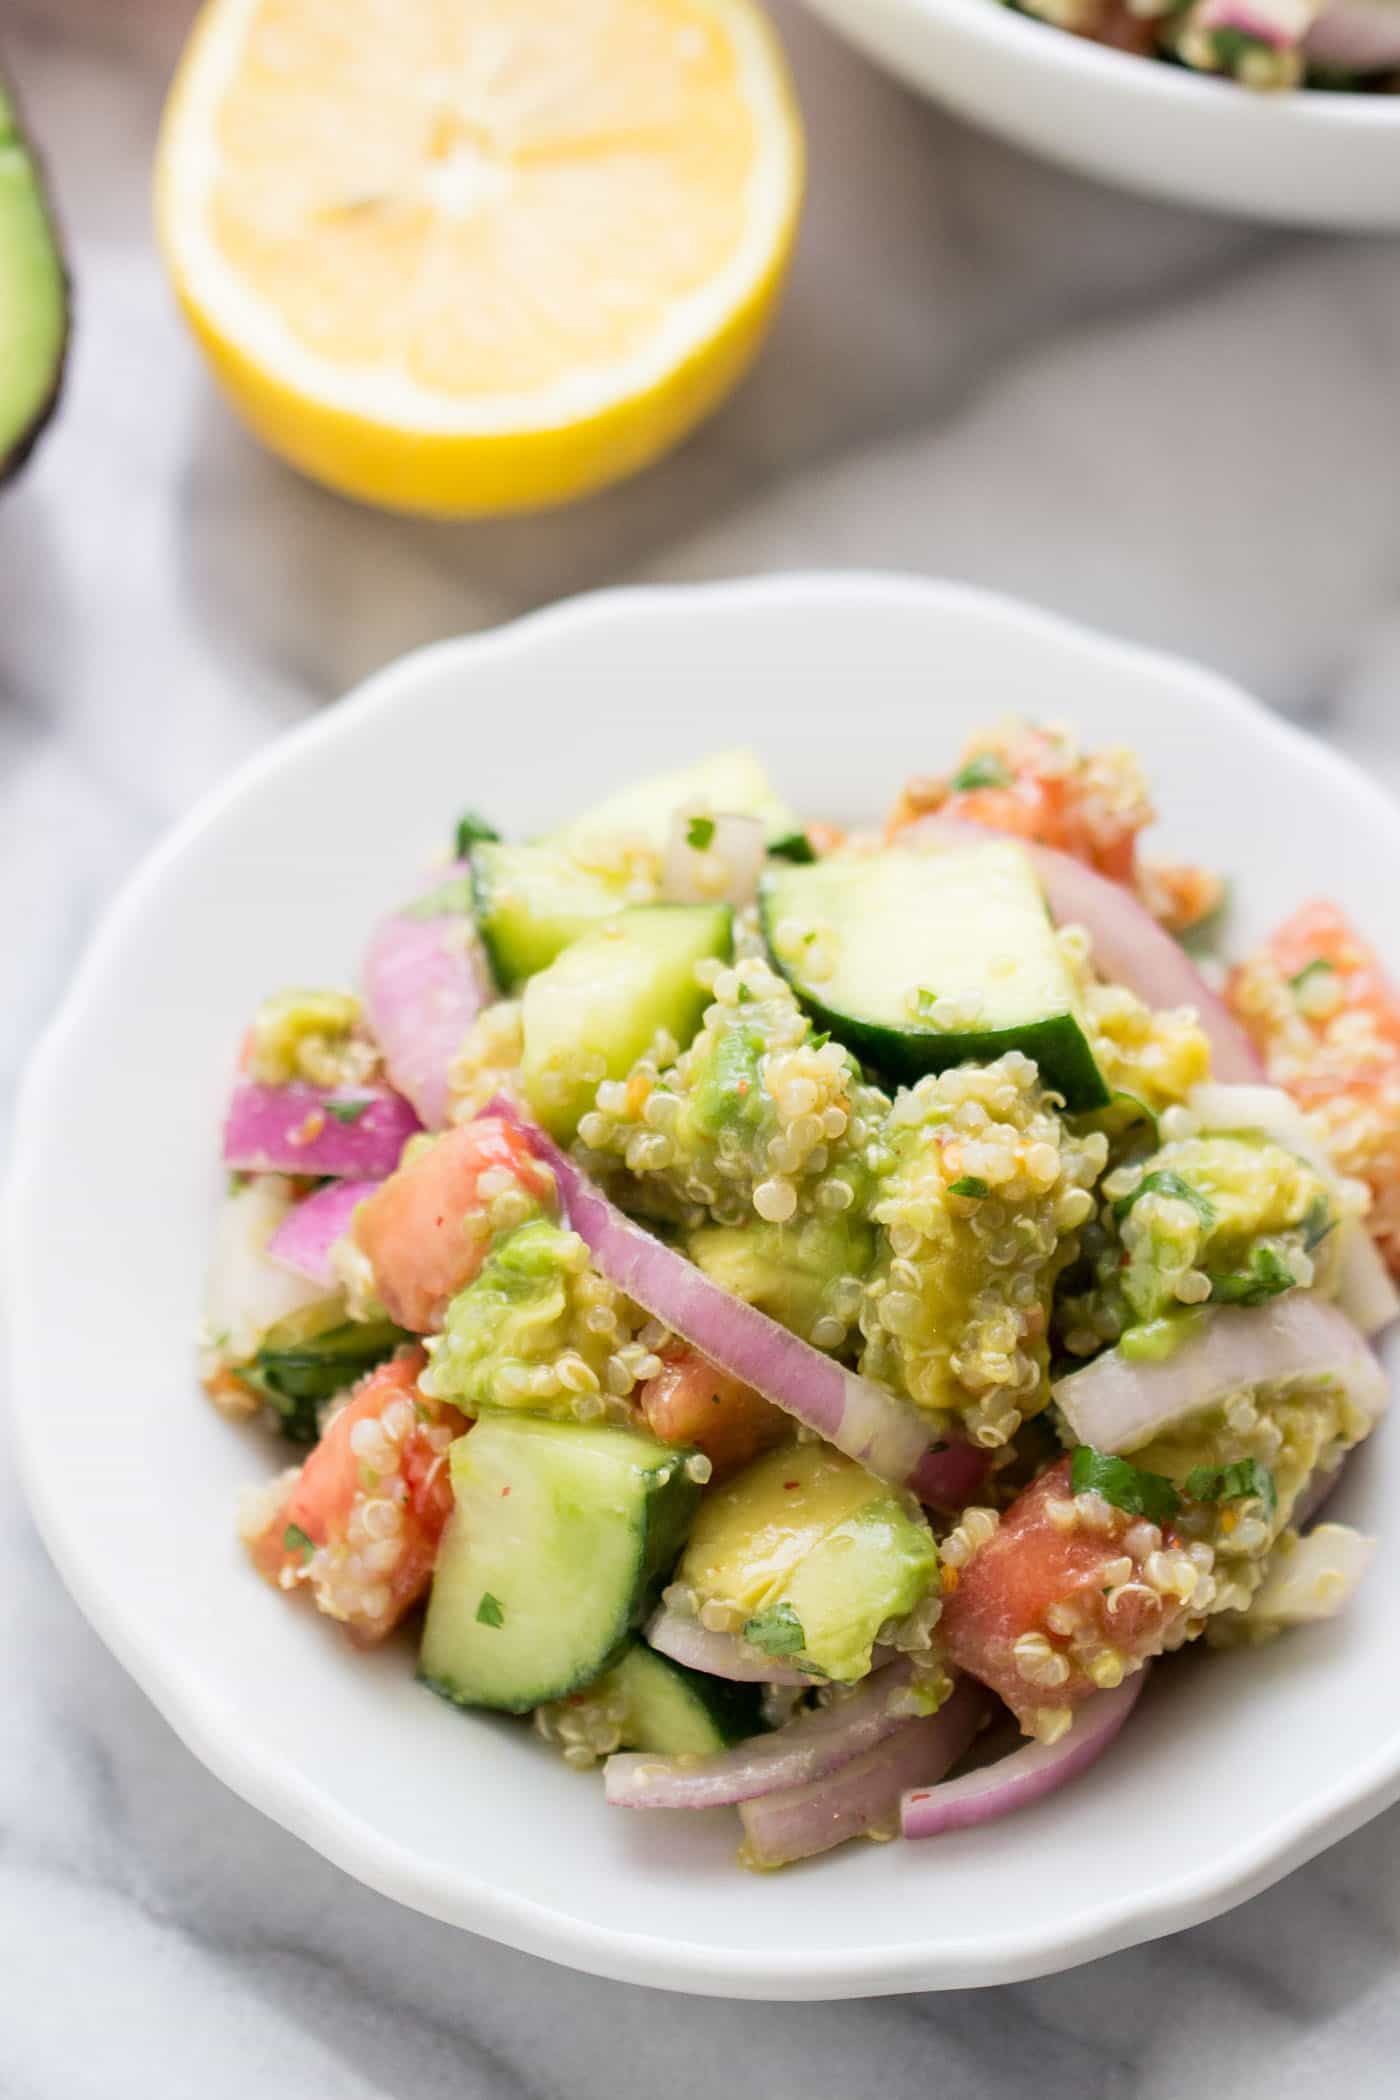 Una semplice insalata di avocado quinoa con cetrioli e pomodori perfect perfetta per il pranzo o per un pasto leggero estivo!